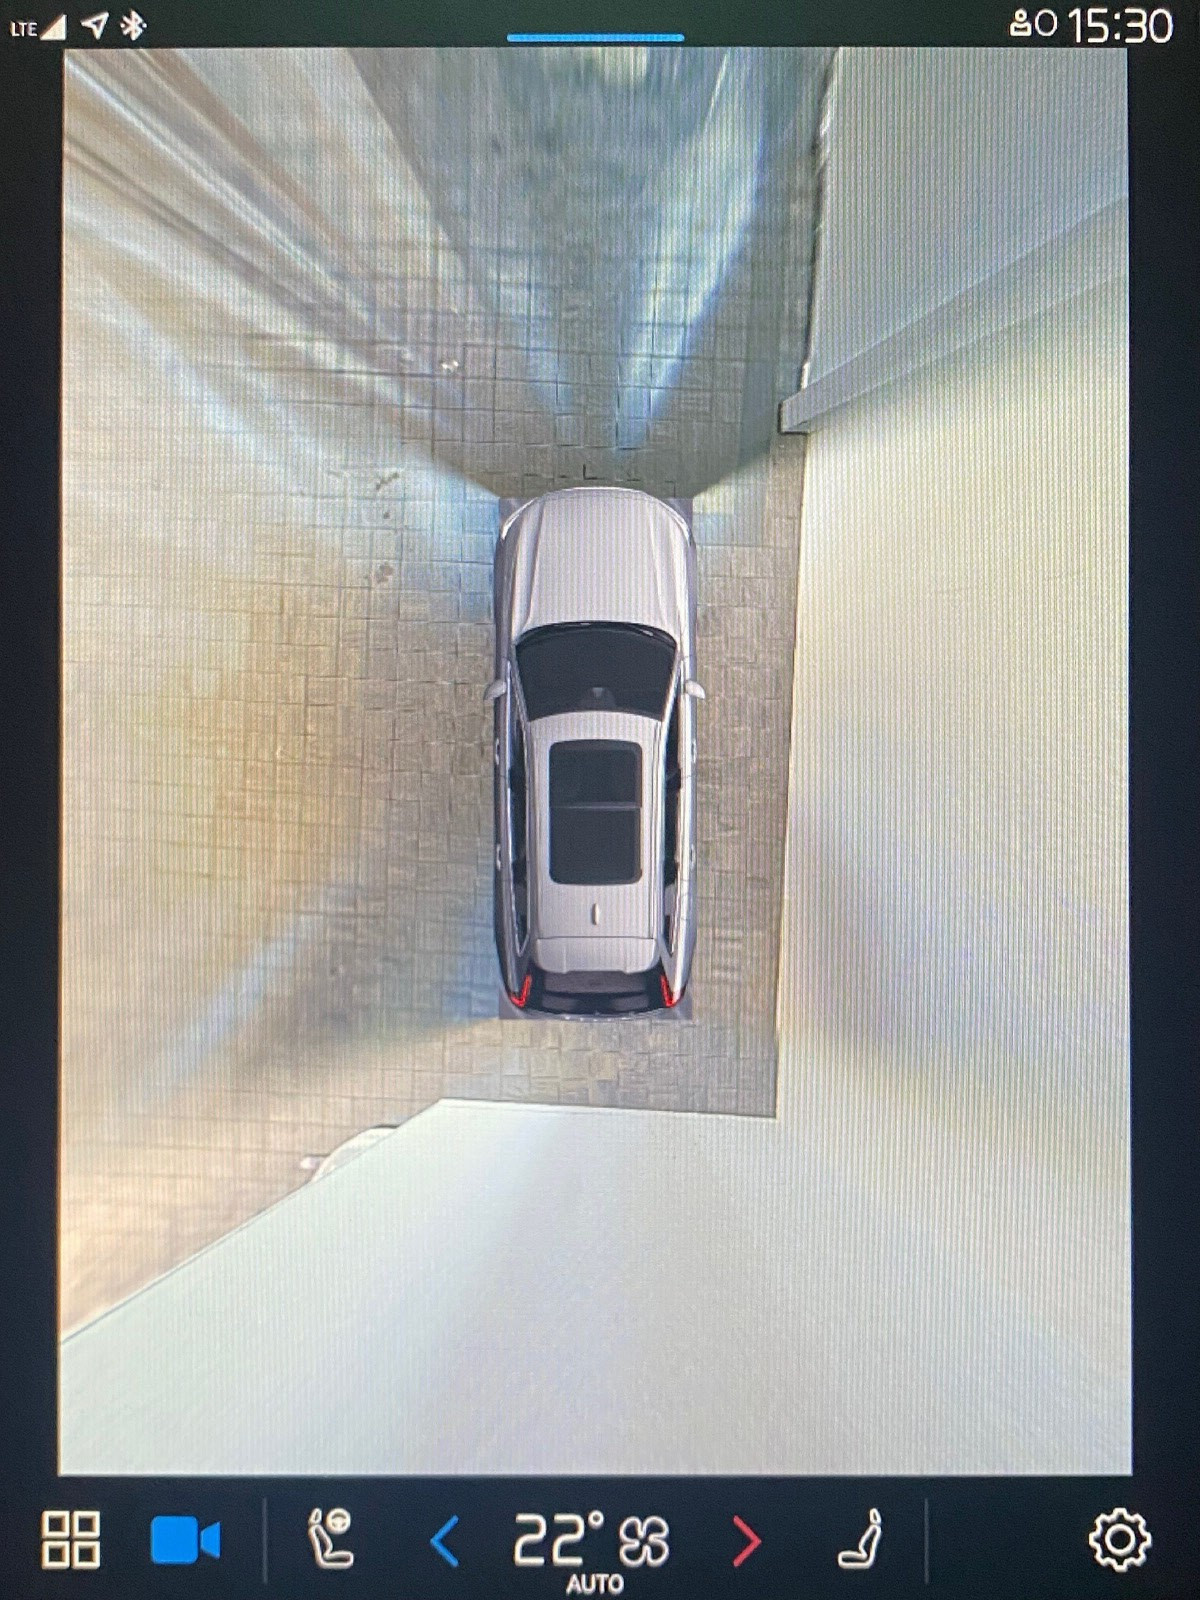 Bilen er utstyrt med 360graaders parkeringskamera